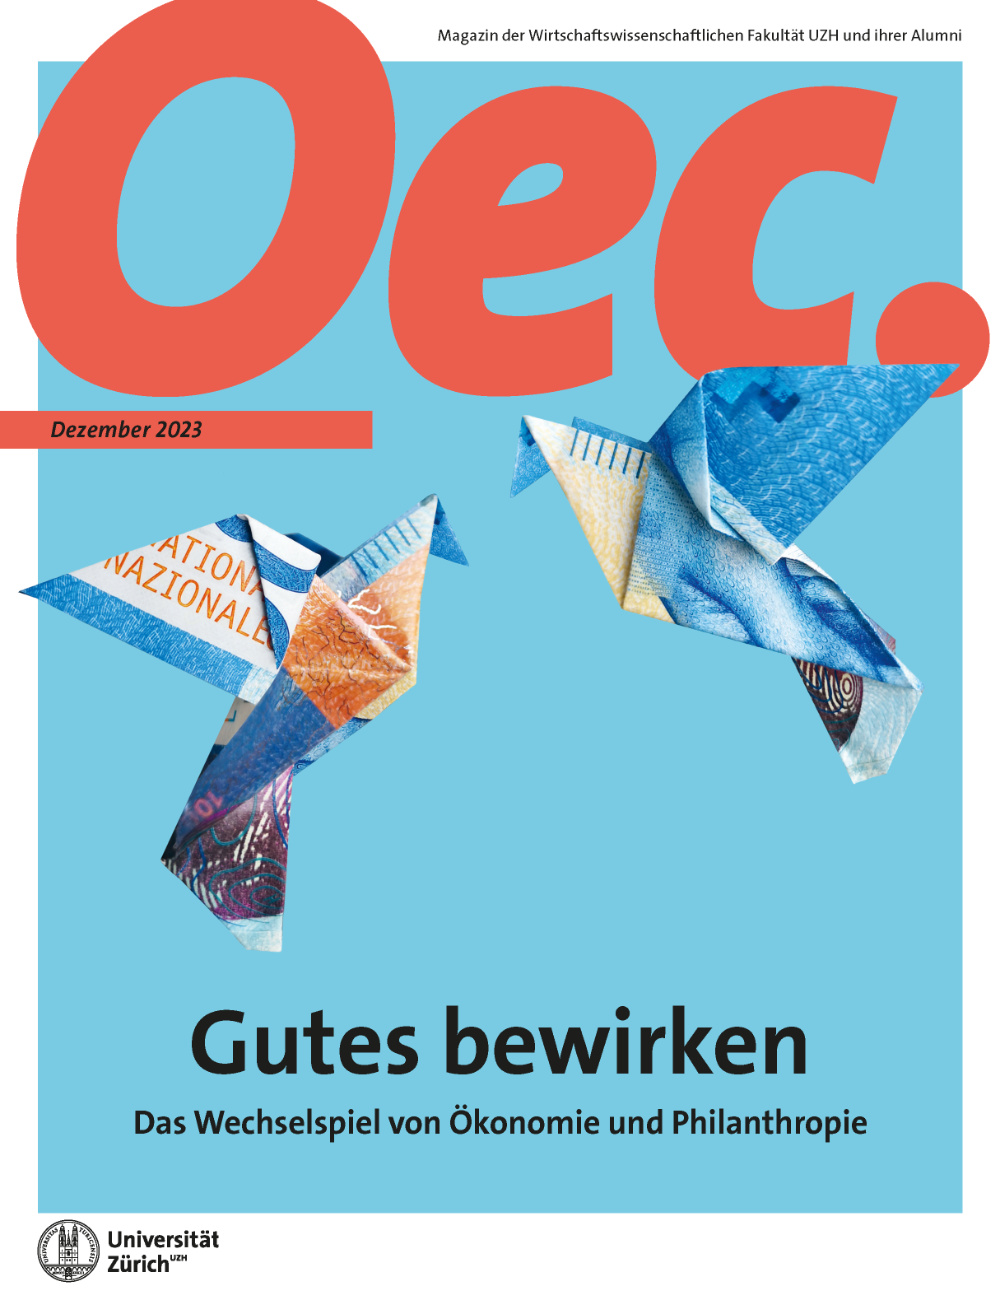 Titelbild Oec. Magazin Ausgabe 20, Titel "Gutes bewirken - Das Wechselspiel von Ökonomie und Philanthropie"